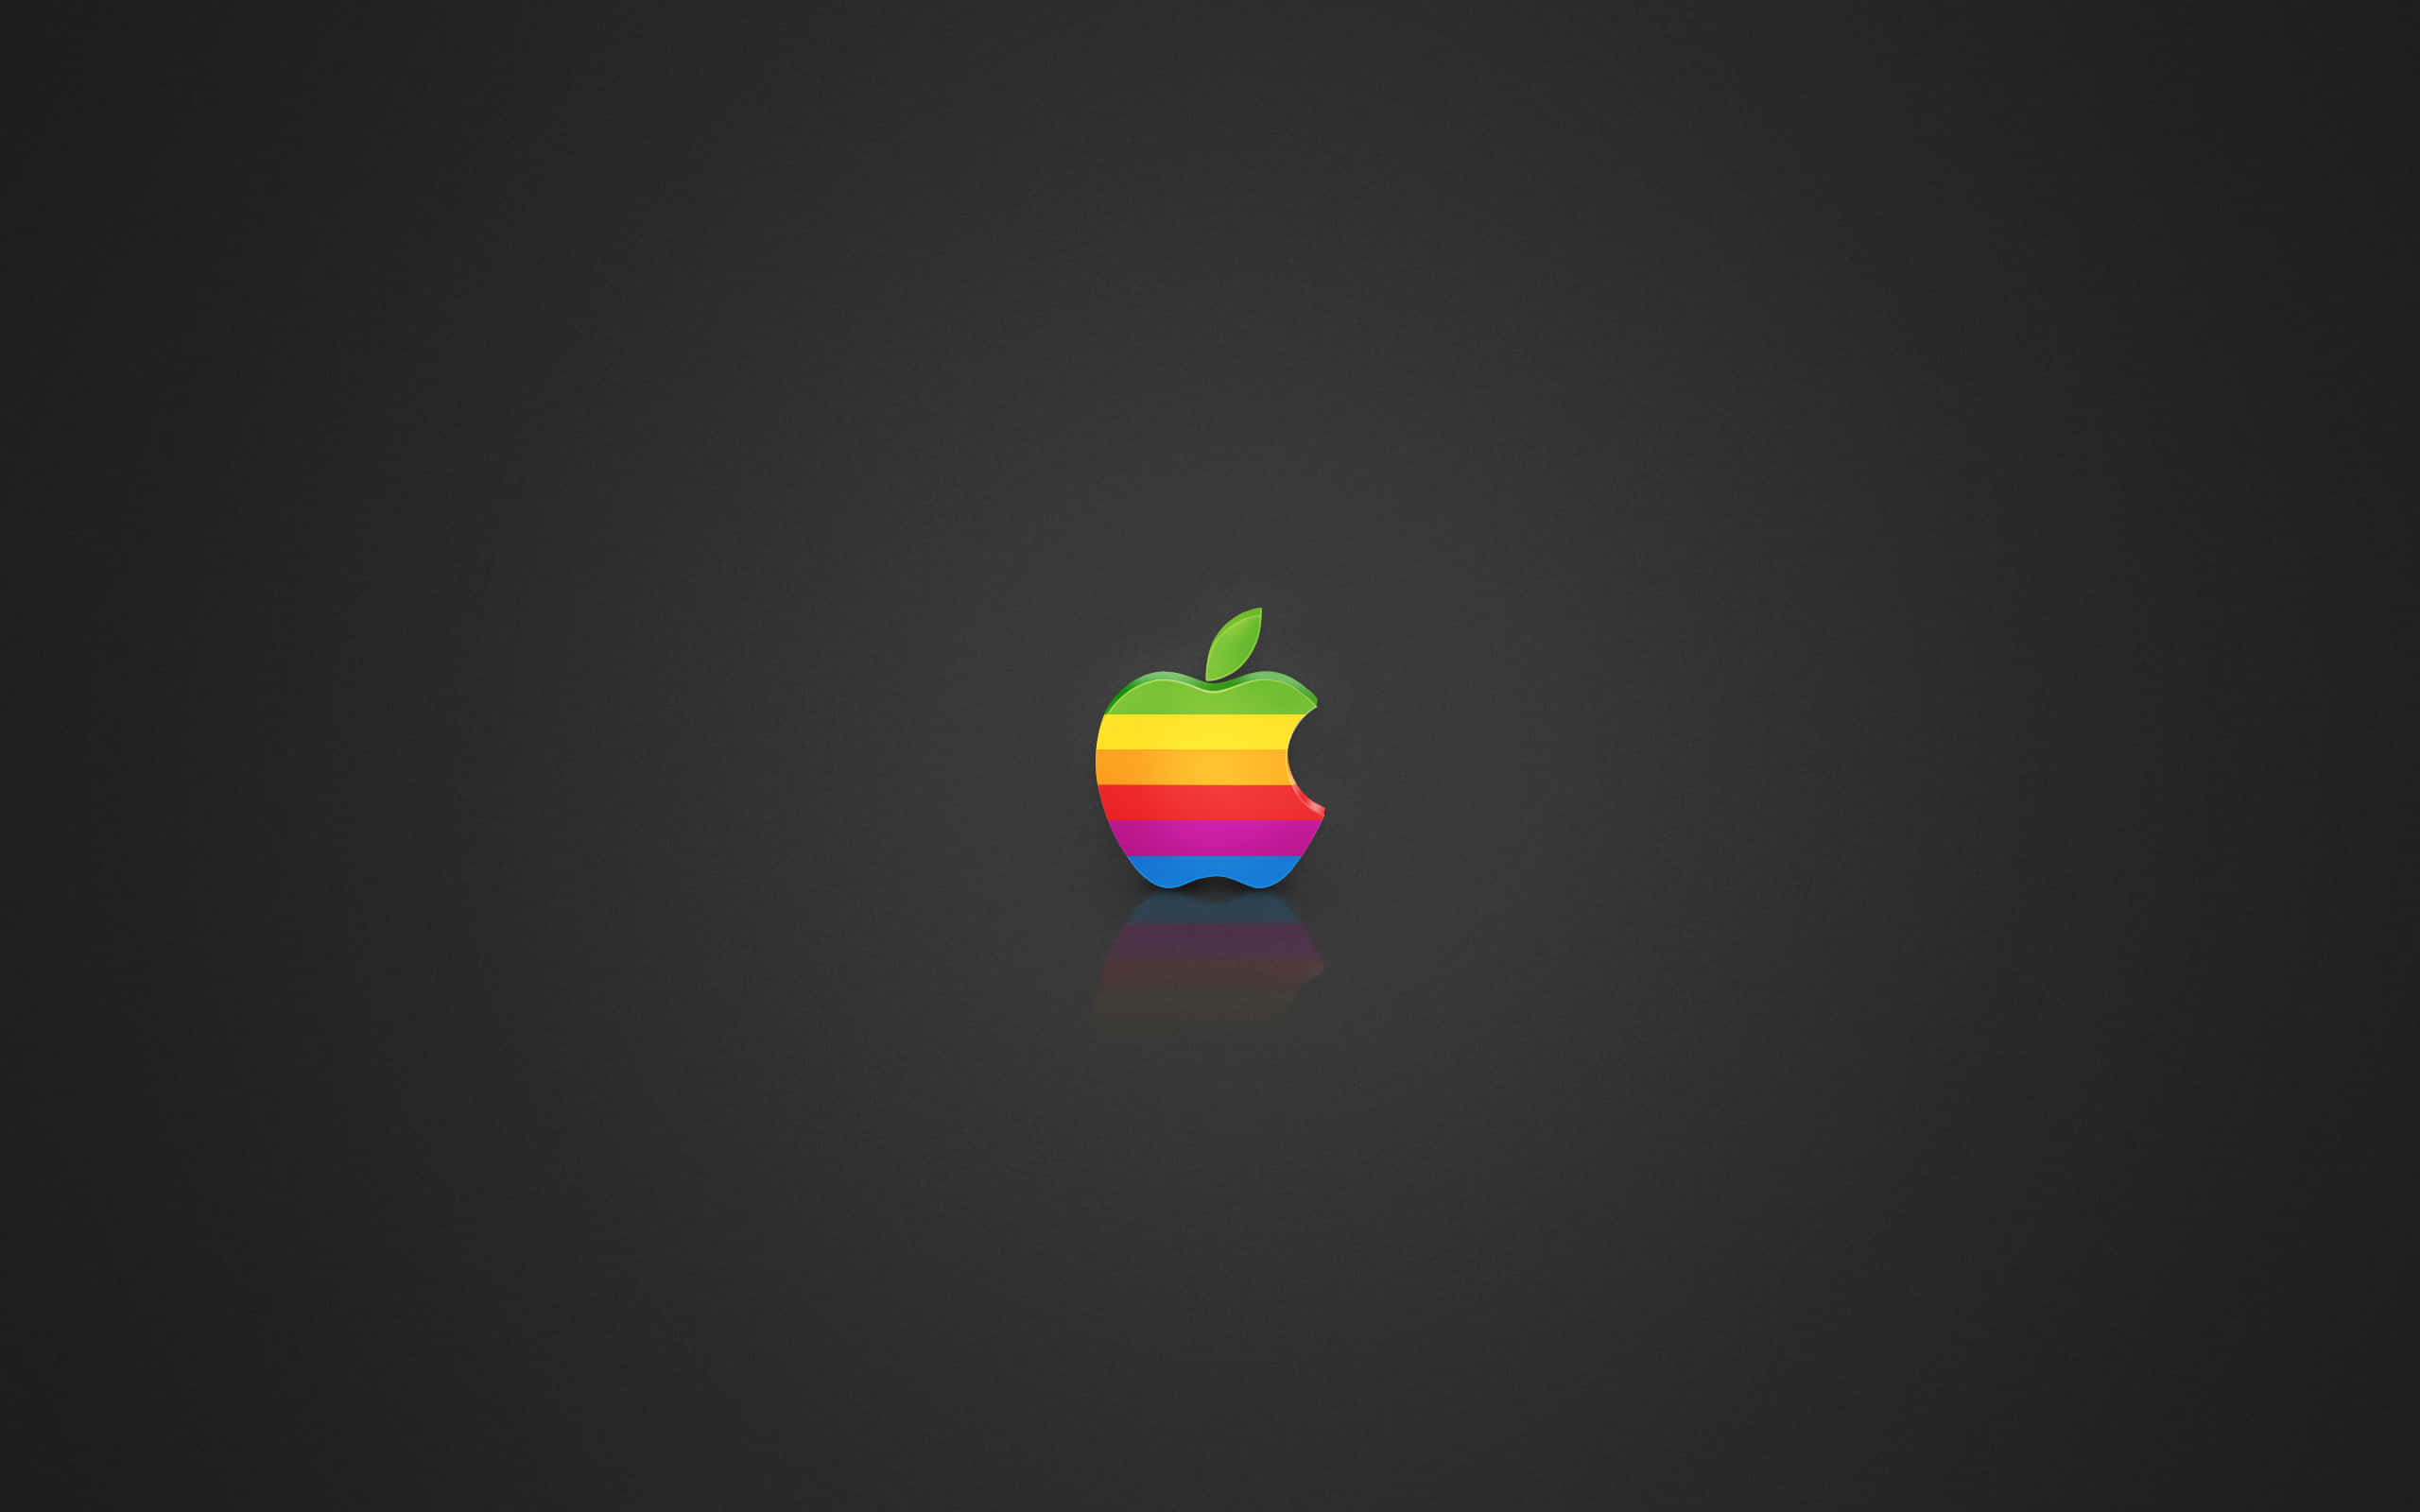 Sfondocon Il Logo Apple Accattivante.